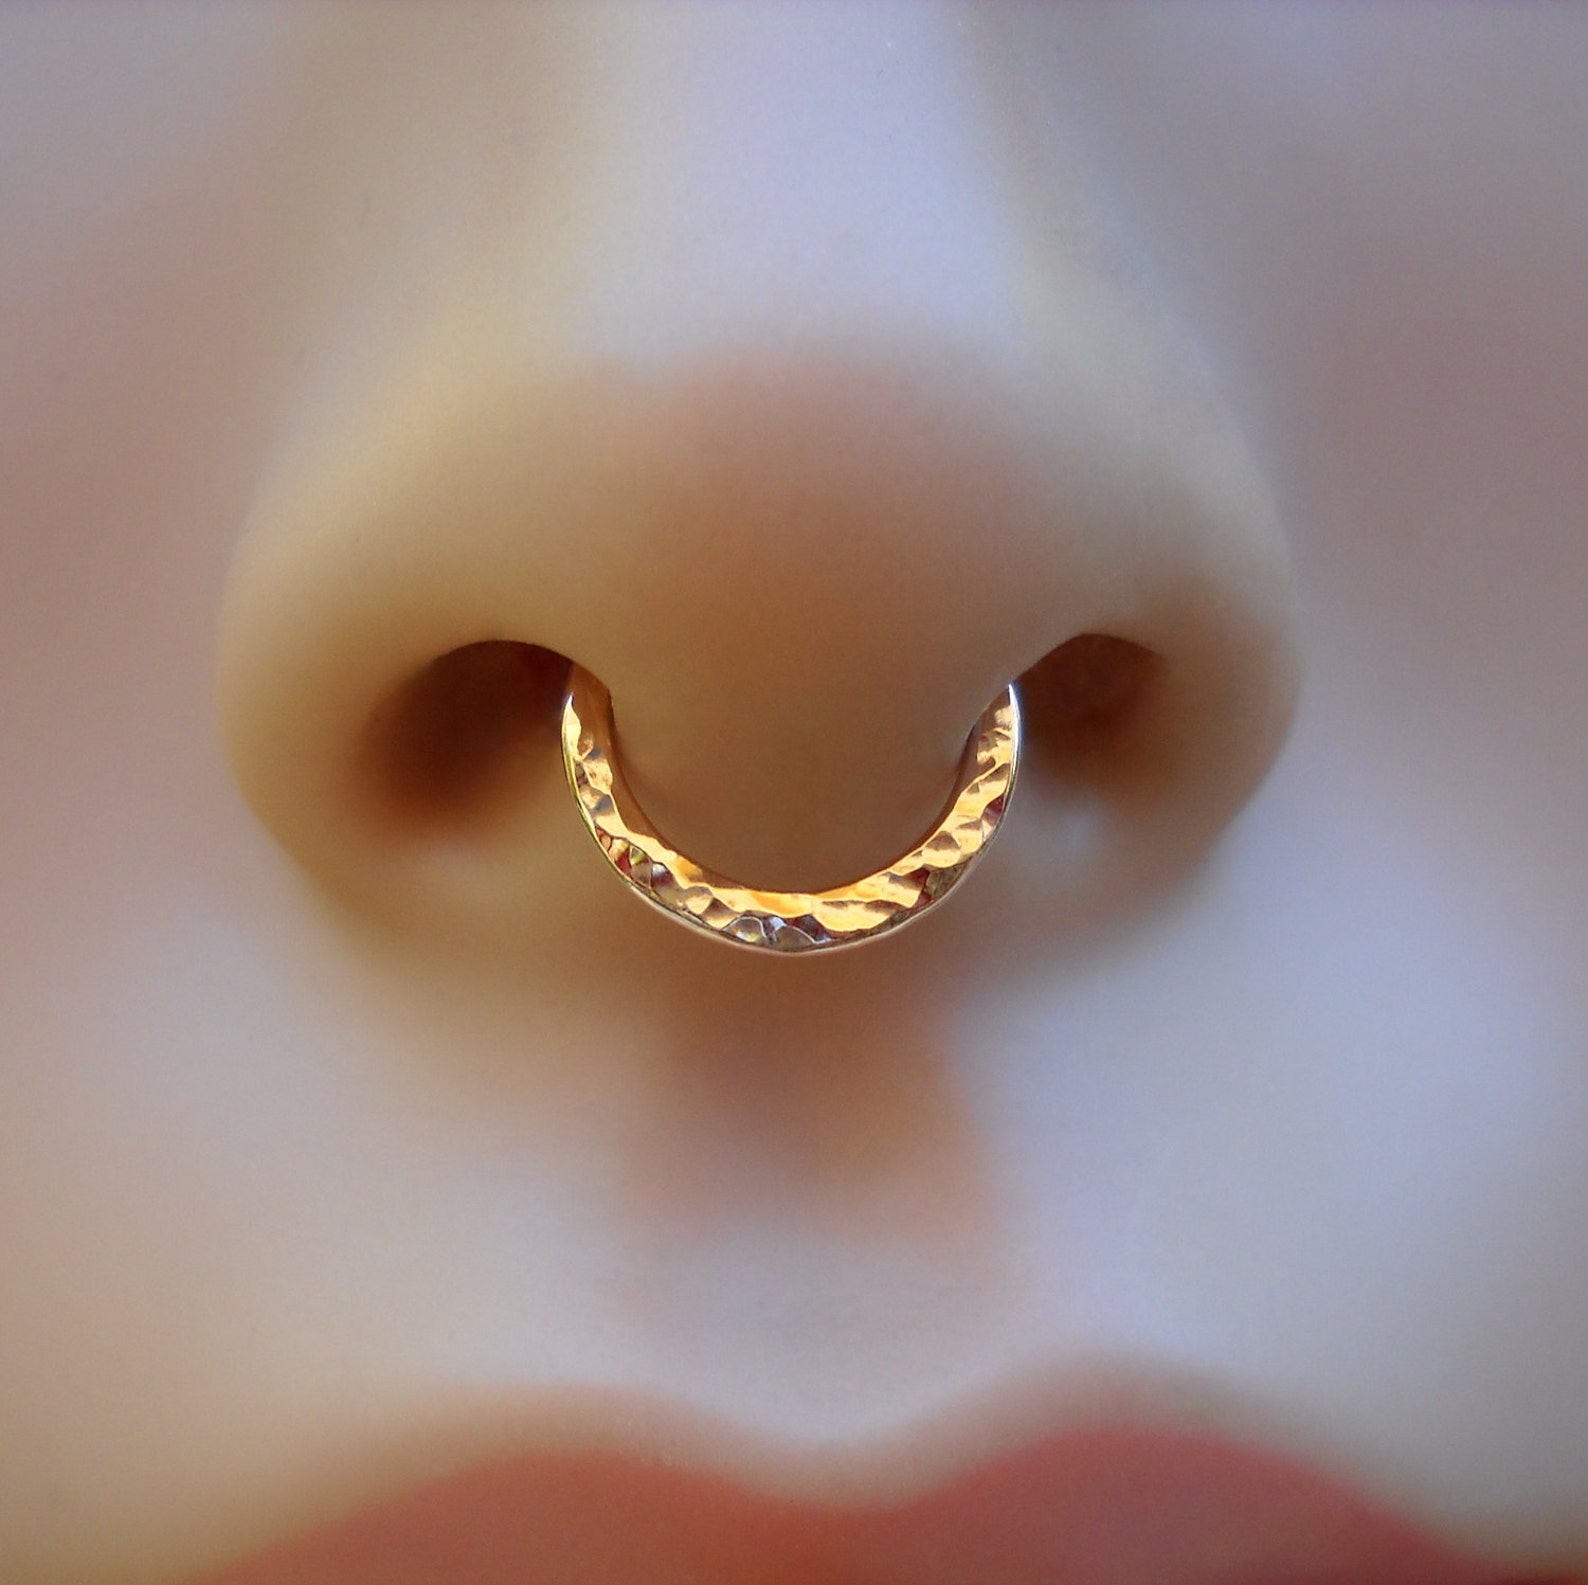 Золотое кольцо в носу